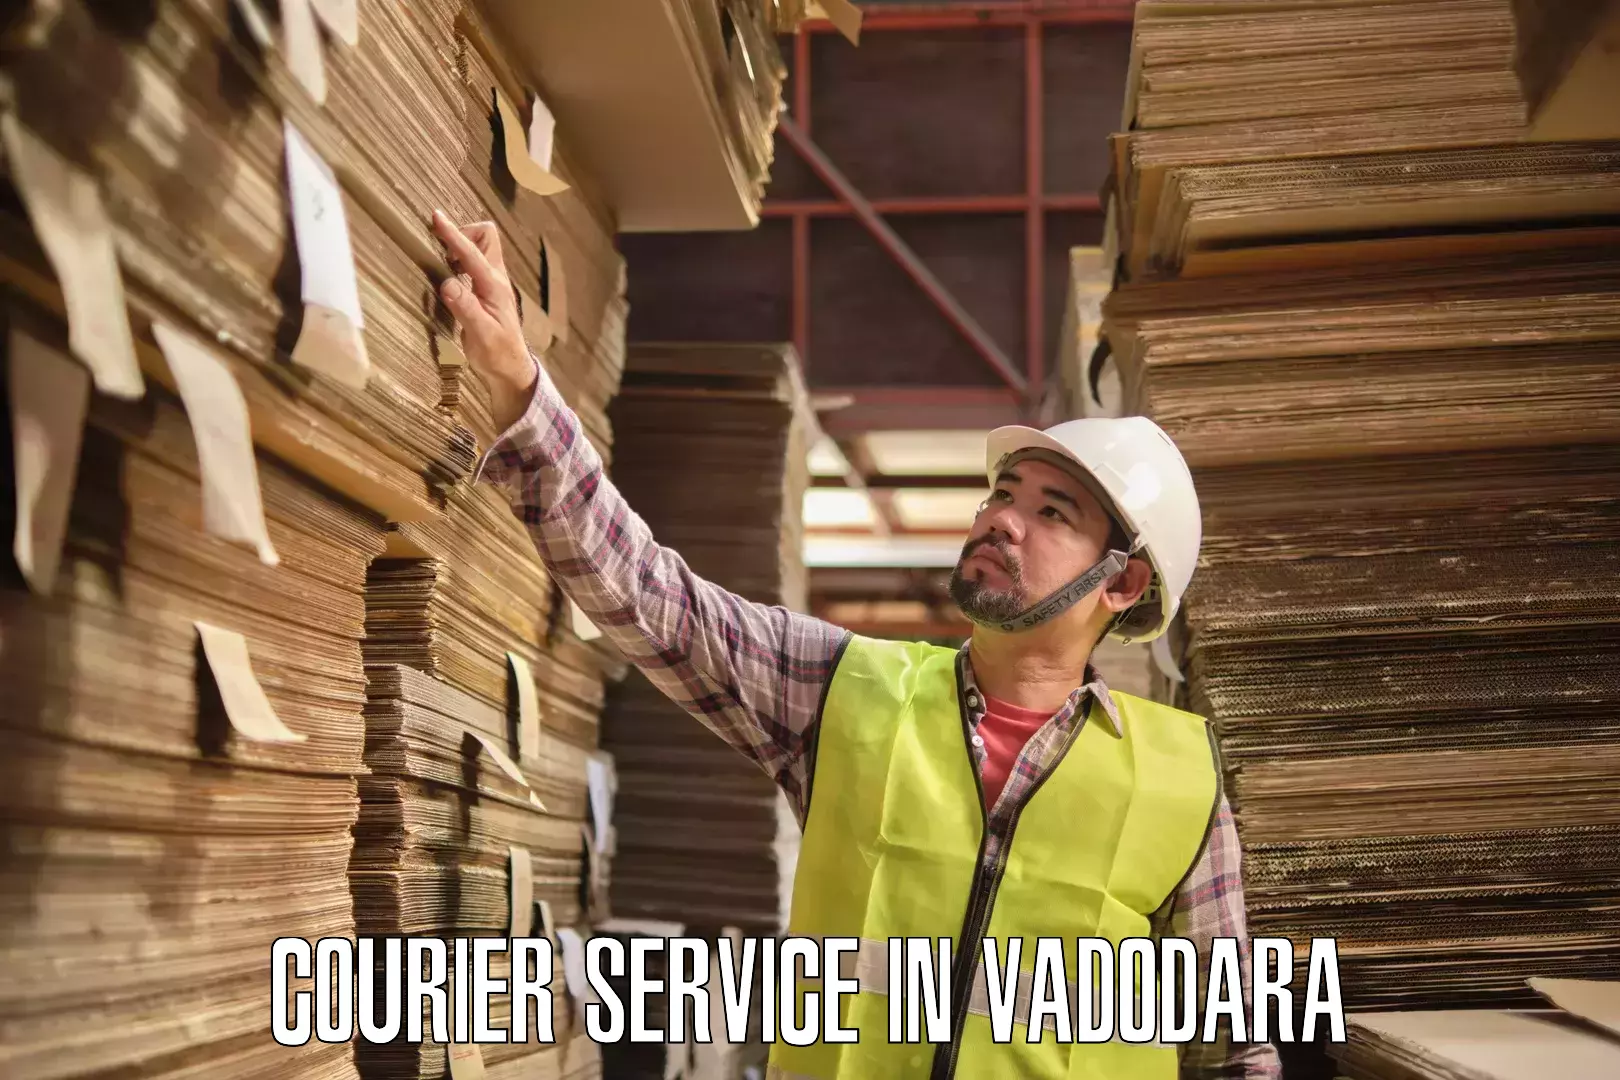 Diverse delivery methods in Vadodara